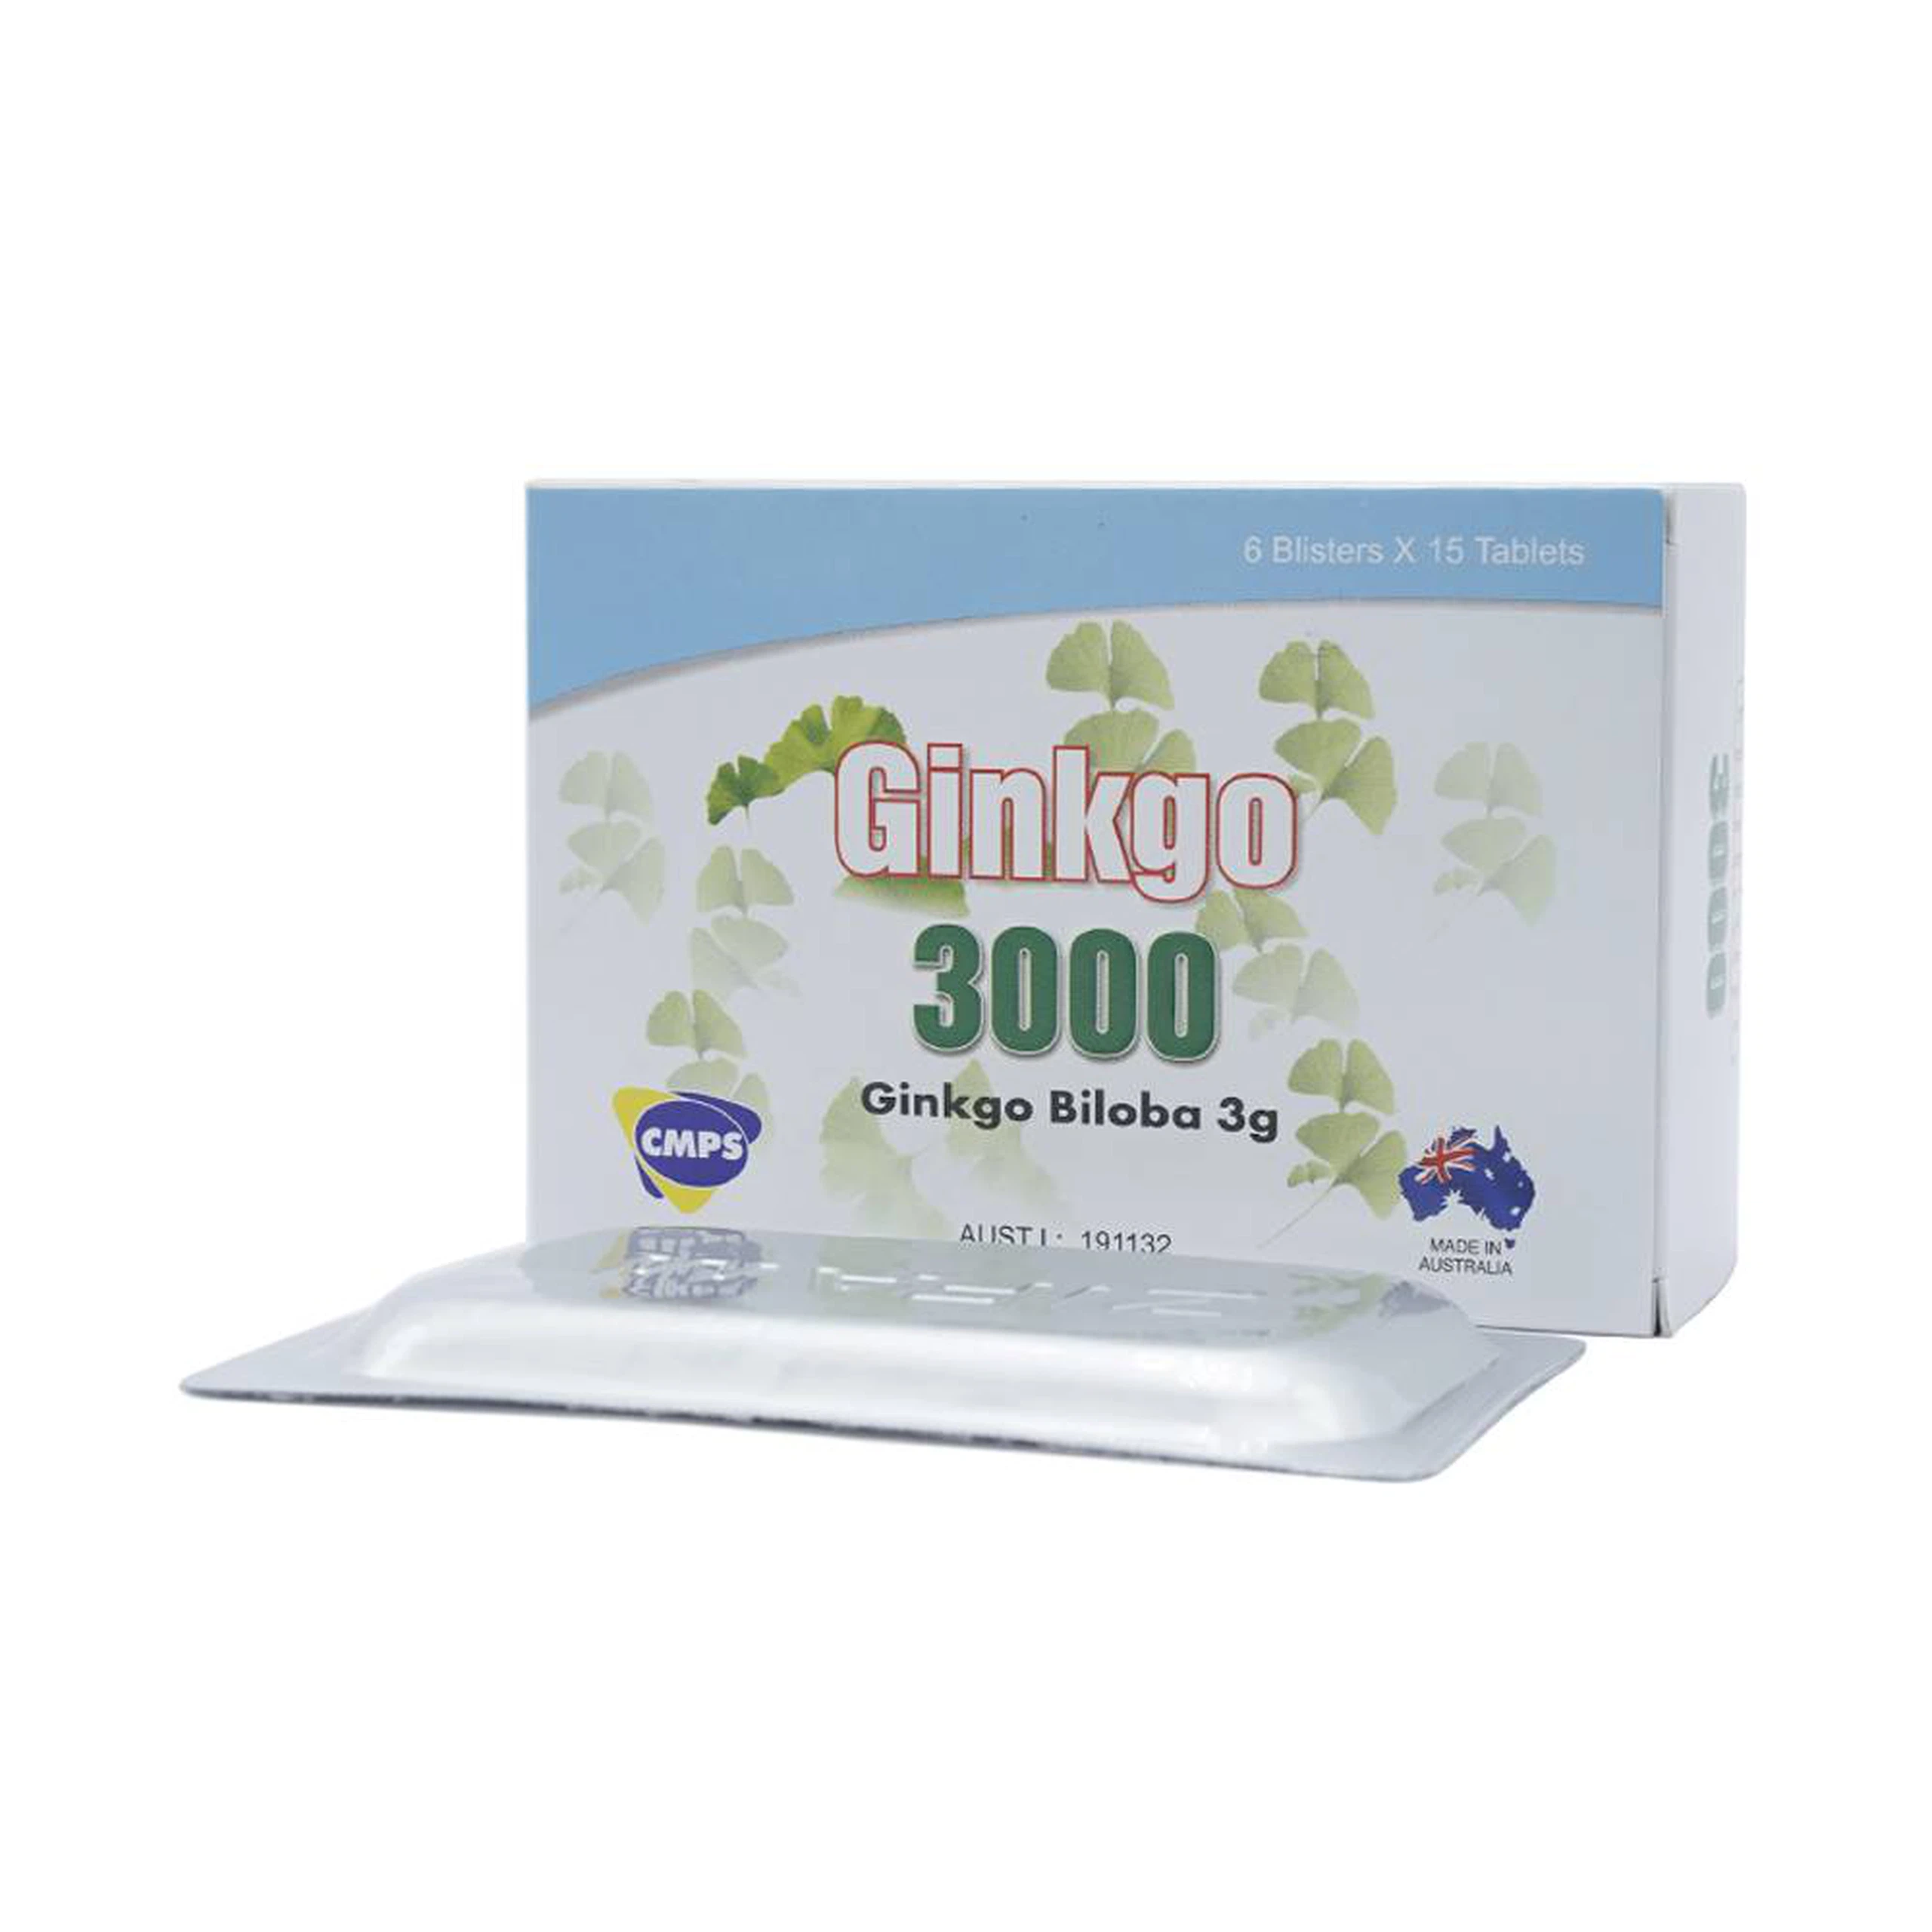 Thuốc Ginkgo 3000 CMPS điều trị suy giảm tuần hoàn máu (6 vỉ x 15 viên)